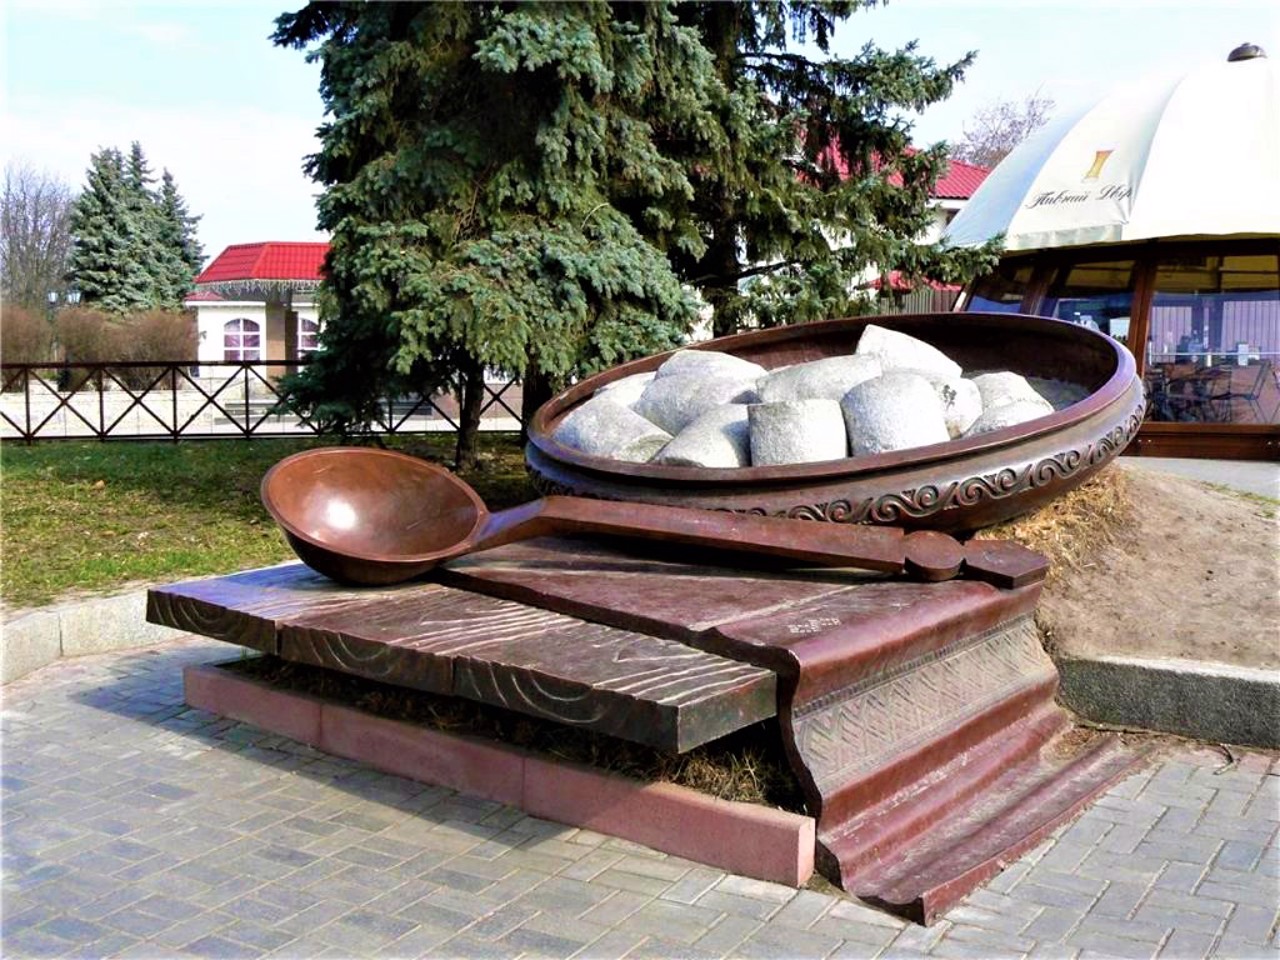 Monument to Poltava halushka